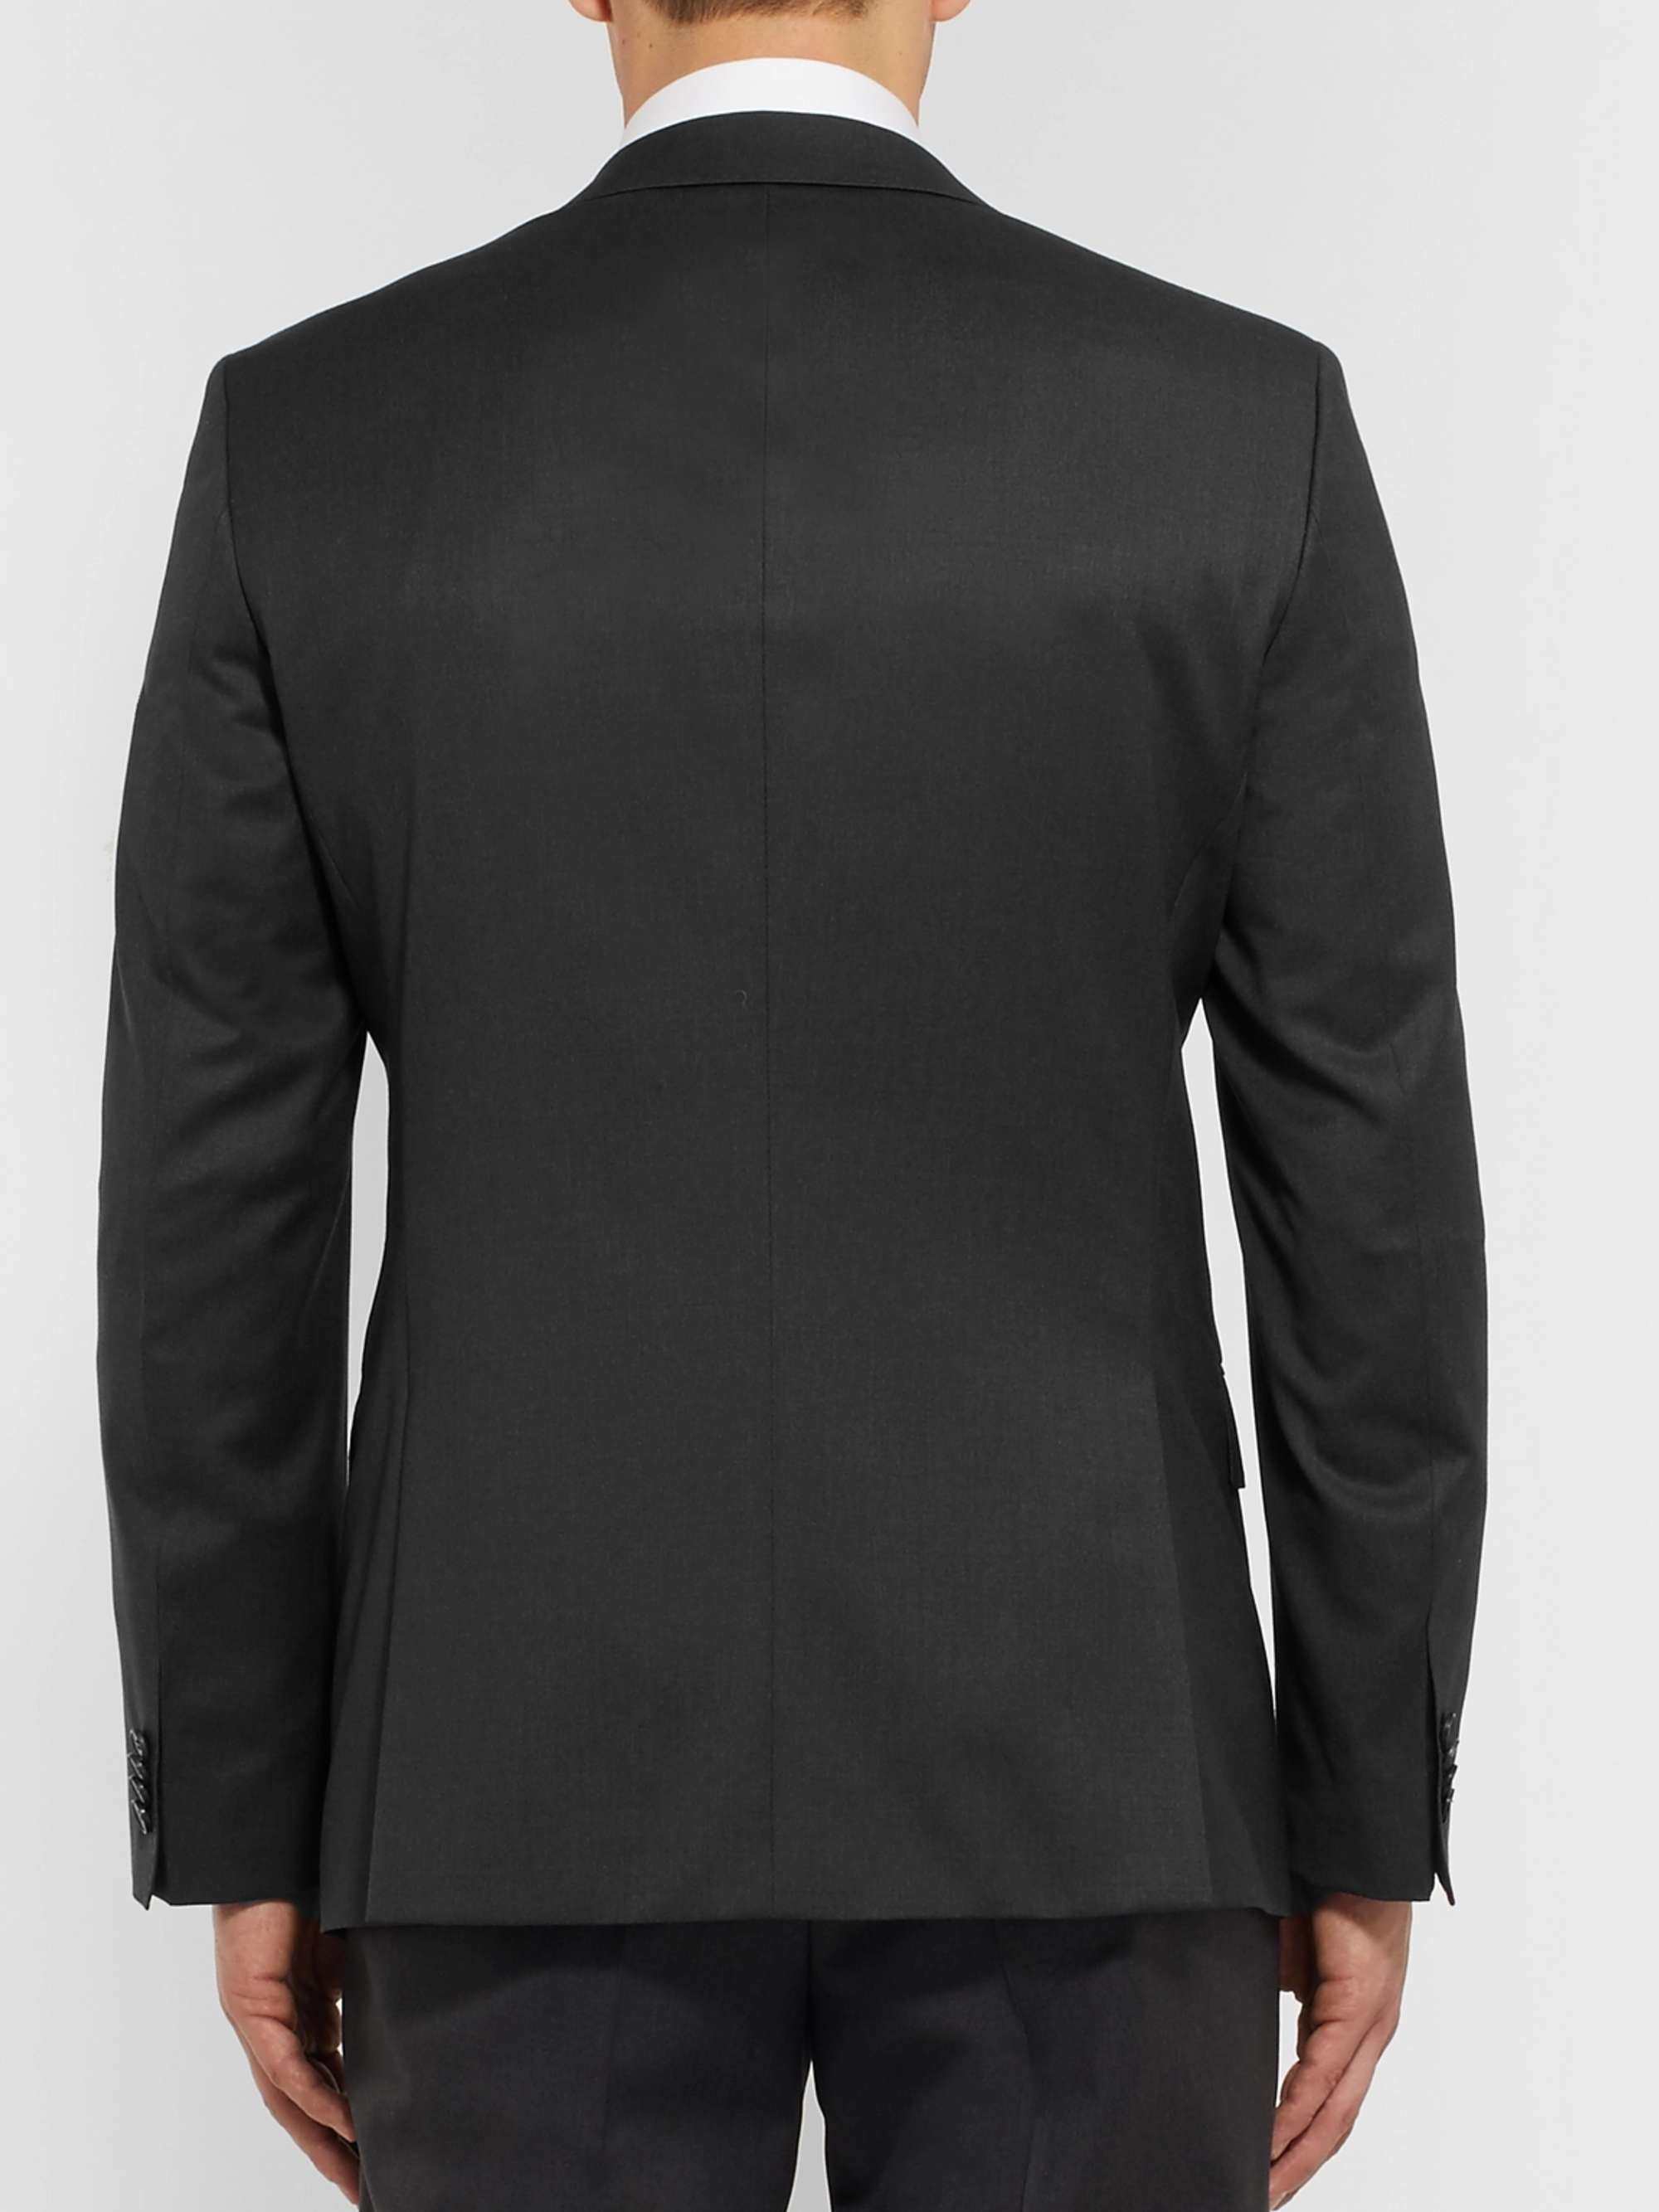 HUGO BOSS Grey Hayes Slim-Fit Super 120s Virgin Wool Suit Jacket for ...